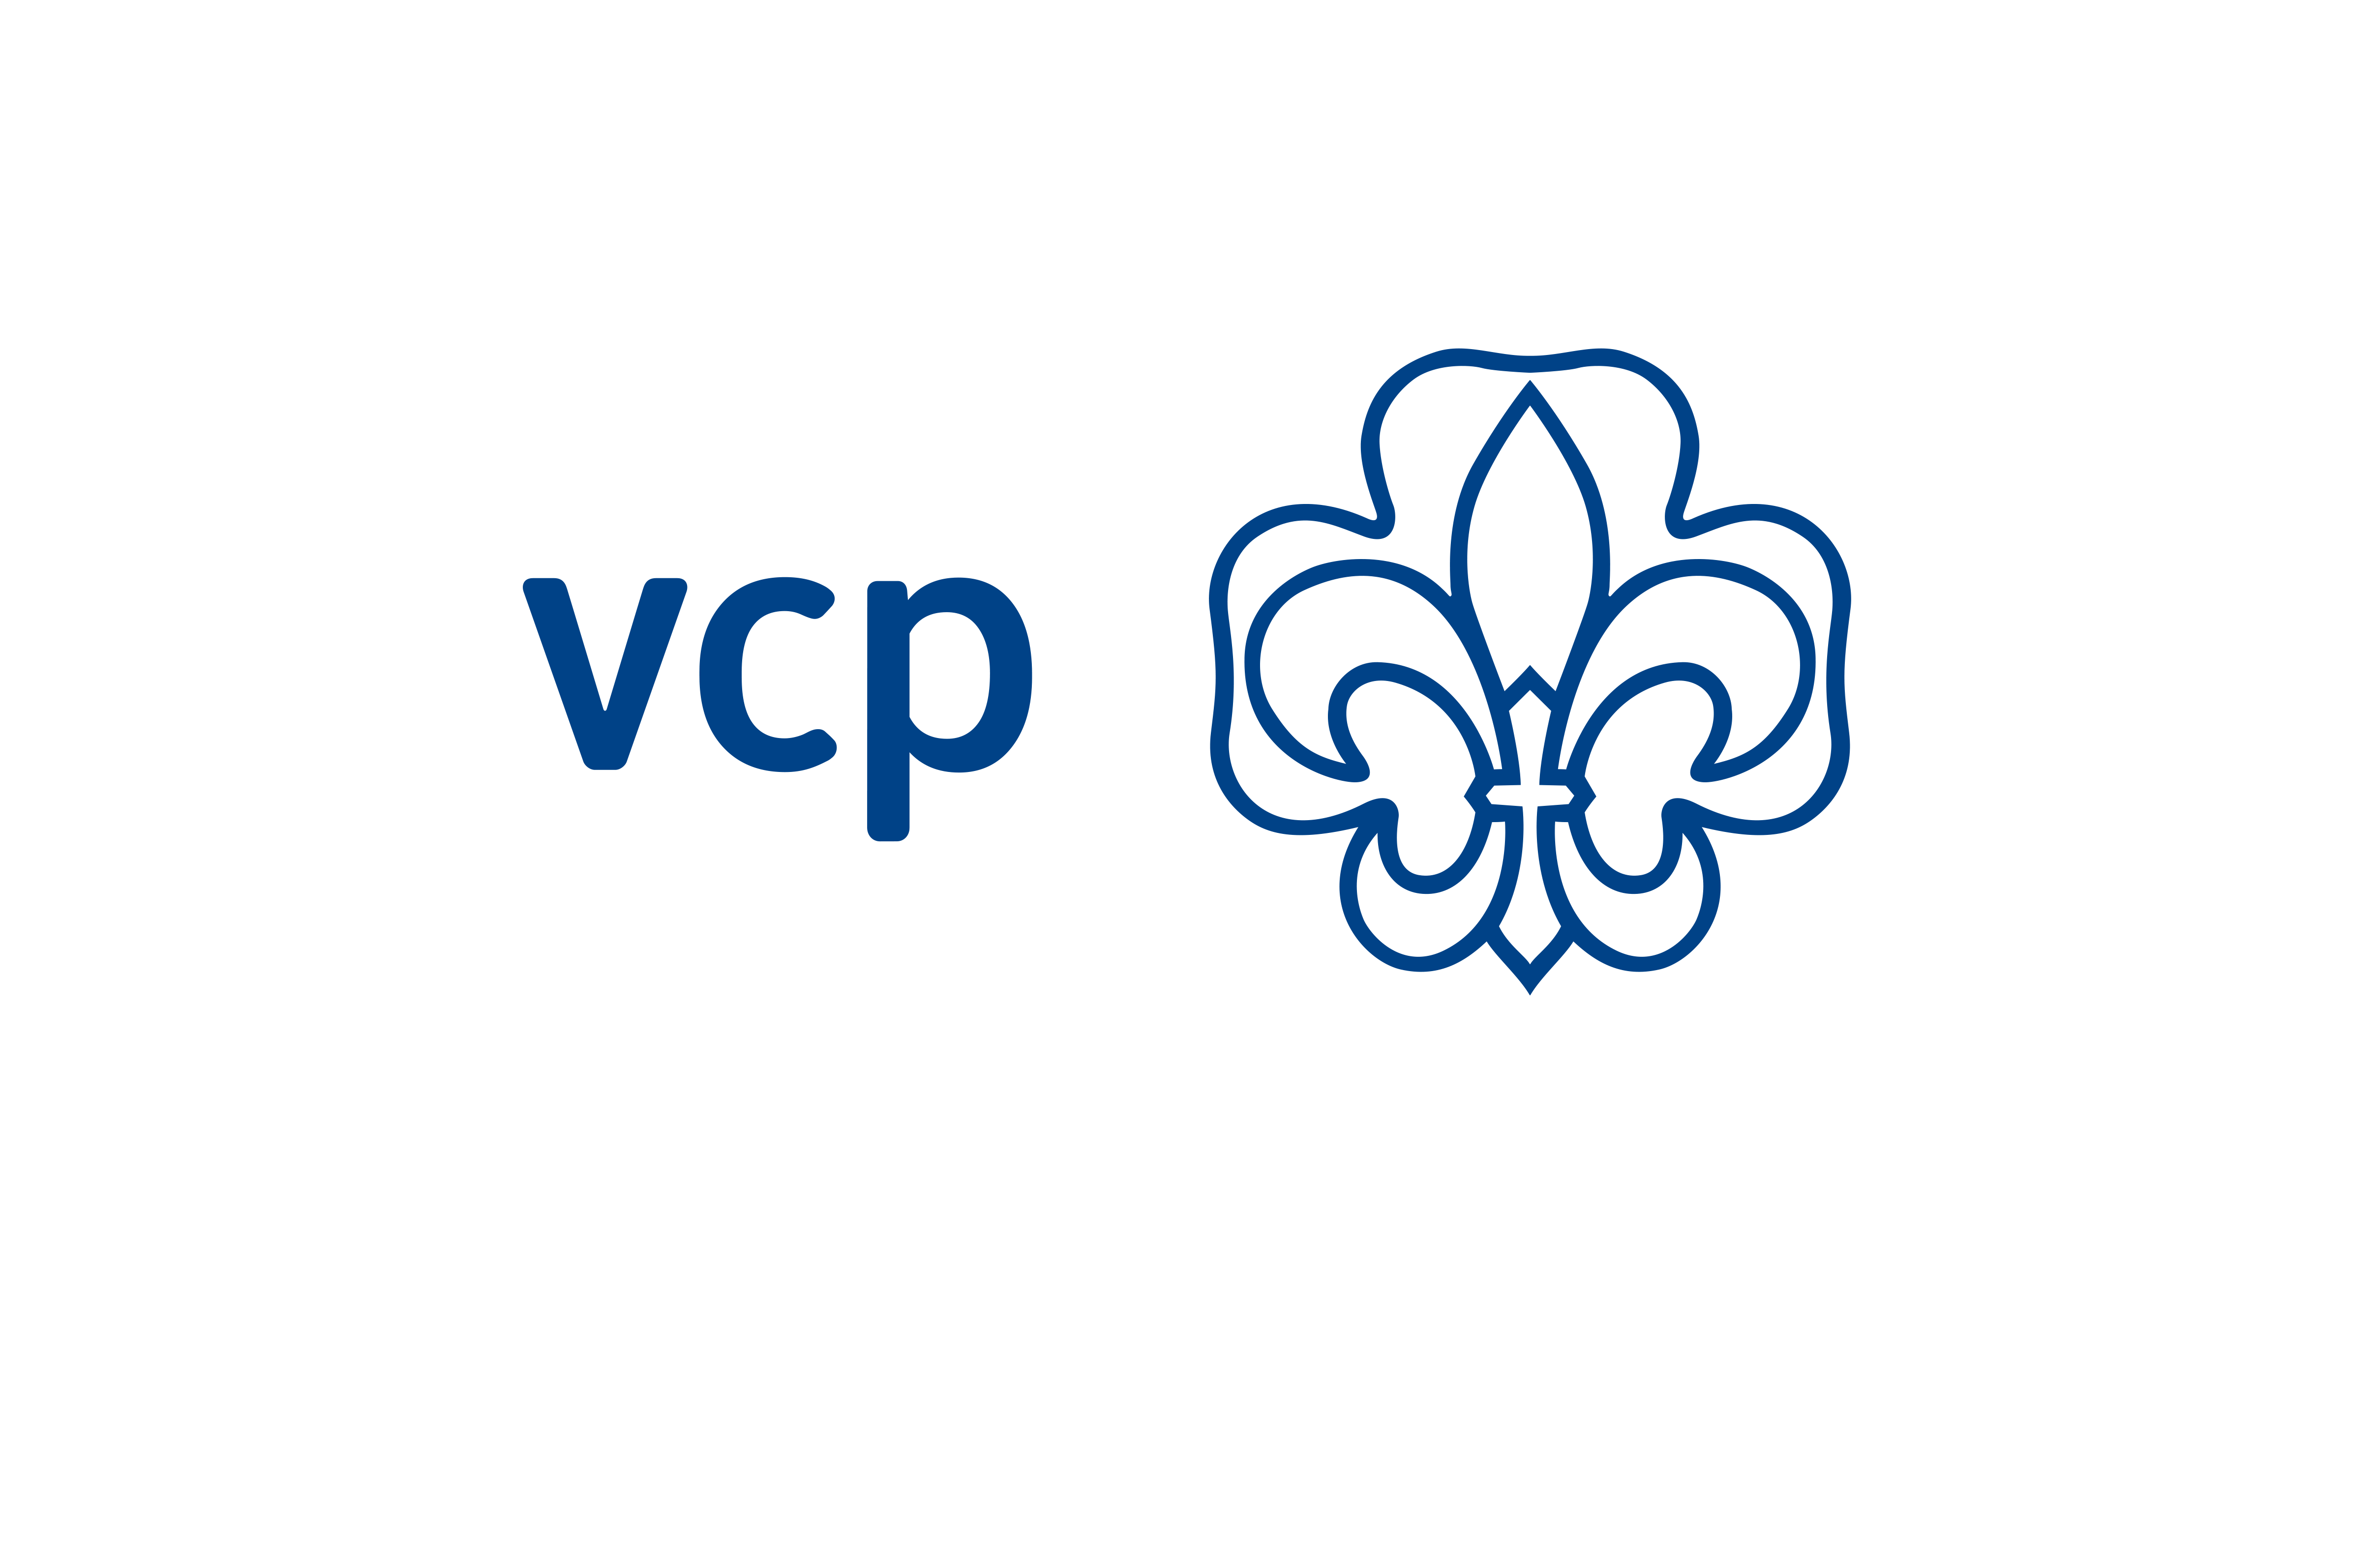 VCP Logo - VCP - Zeichen, Logo, Wortbildmarke